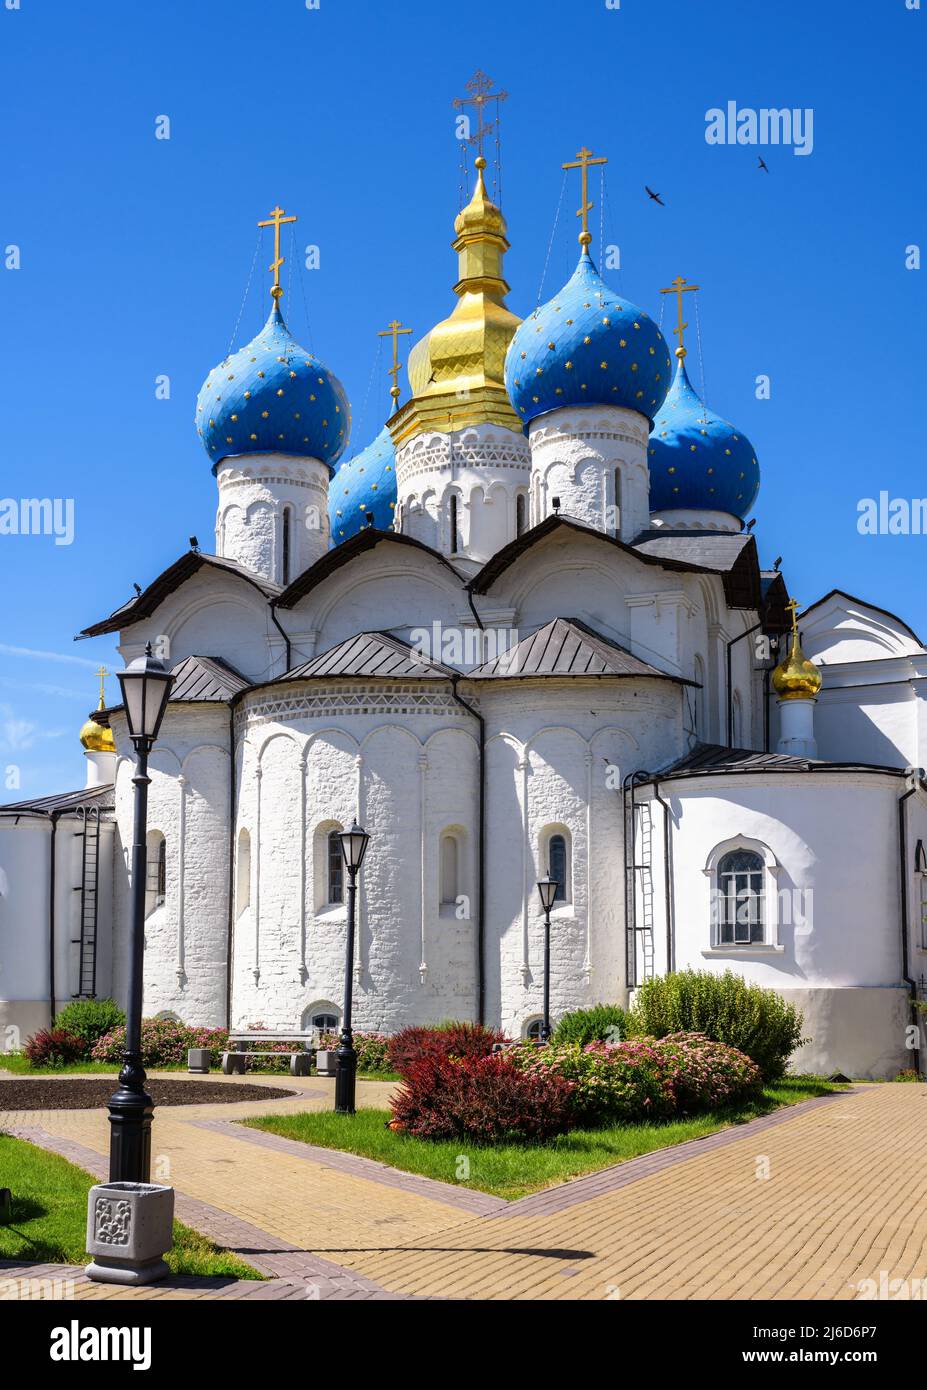 Cattedrale dell'Annunciazione nel Cremlino Kazan, Tatarstan, Russia. Chiesa ortodossa russa, antica pietra miliare di Kazan in estate. Questo posto è attrazione turistica Foto Stock